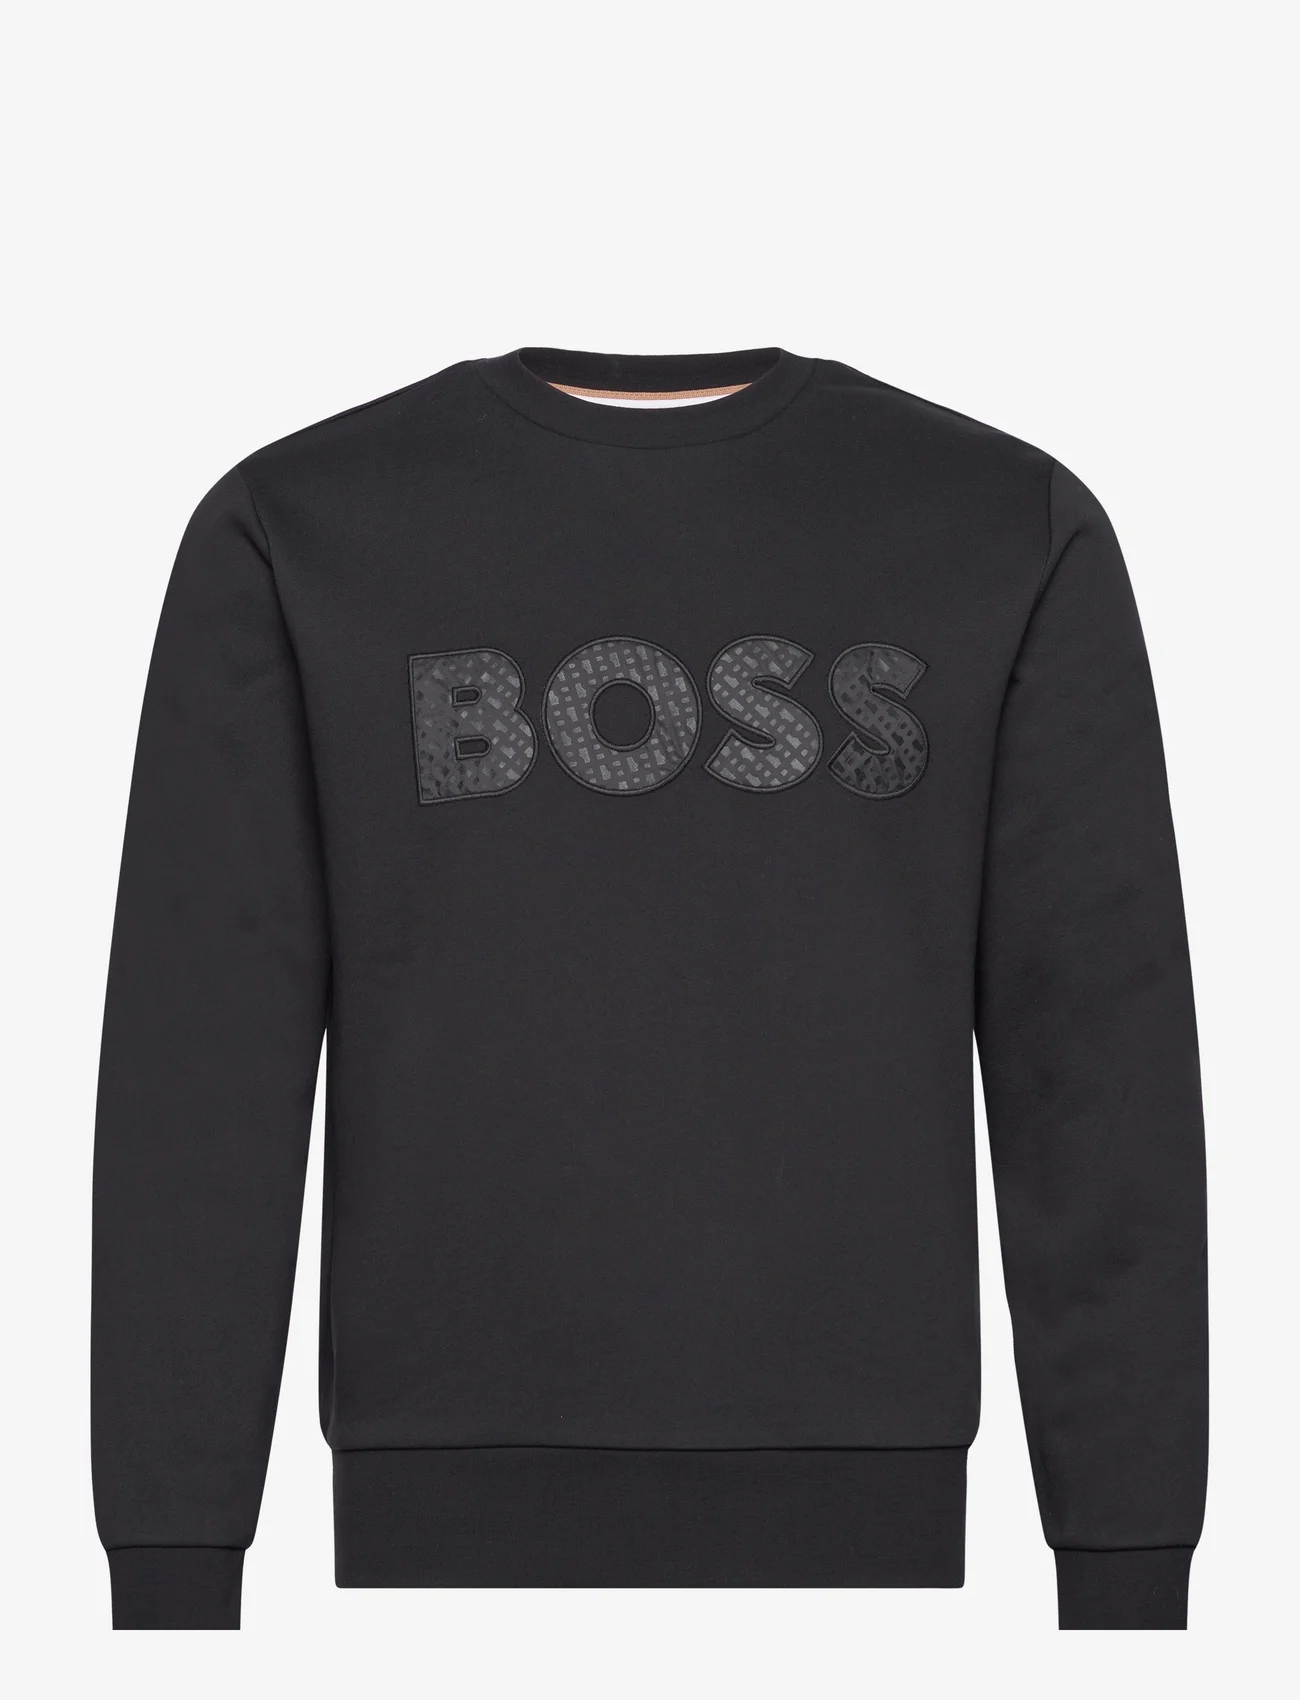 BOSS - Soleri 01 - sportiska stila džemperi - black - 0